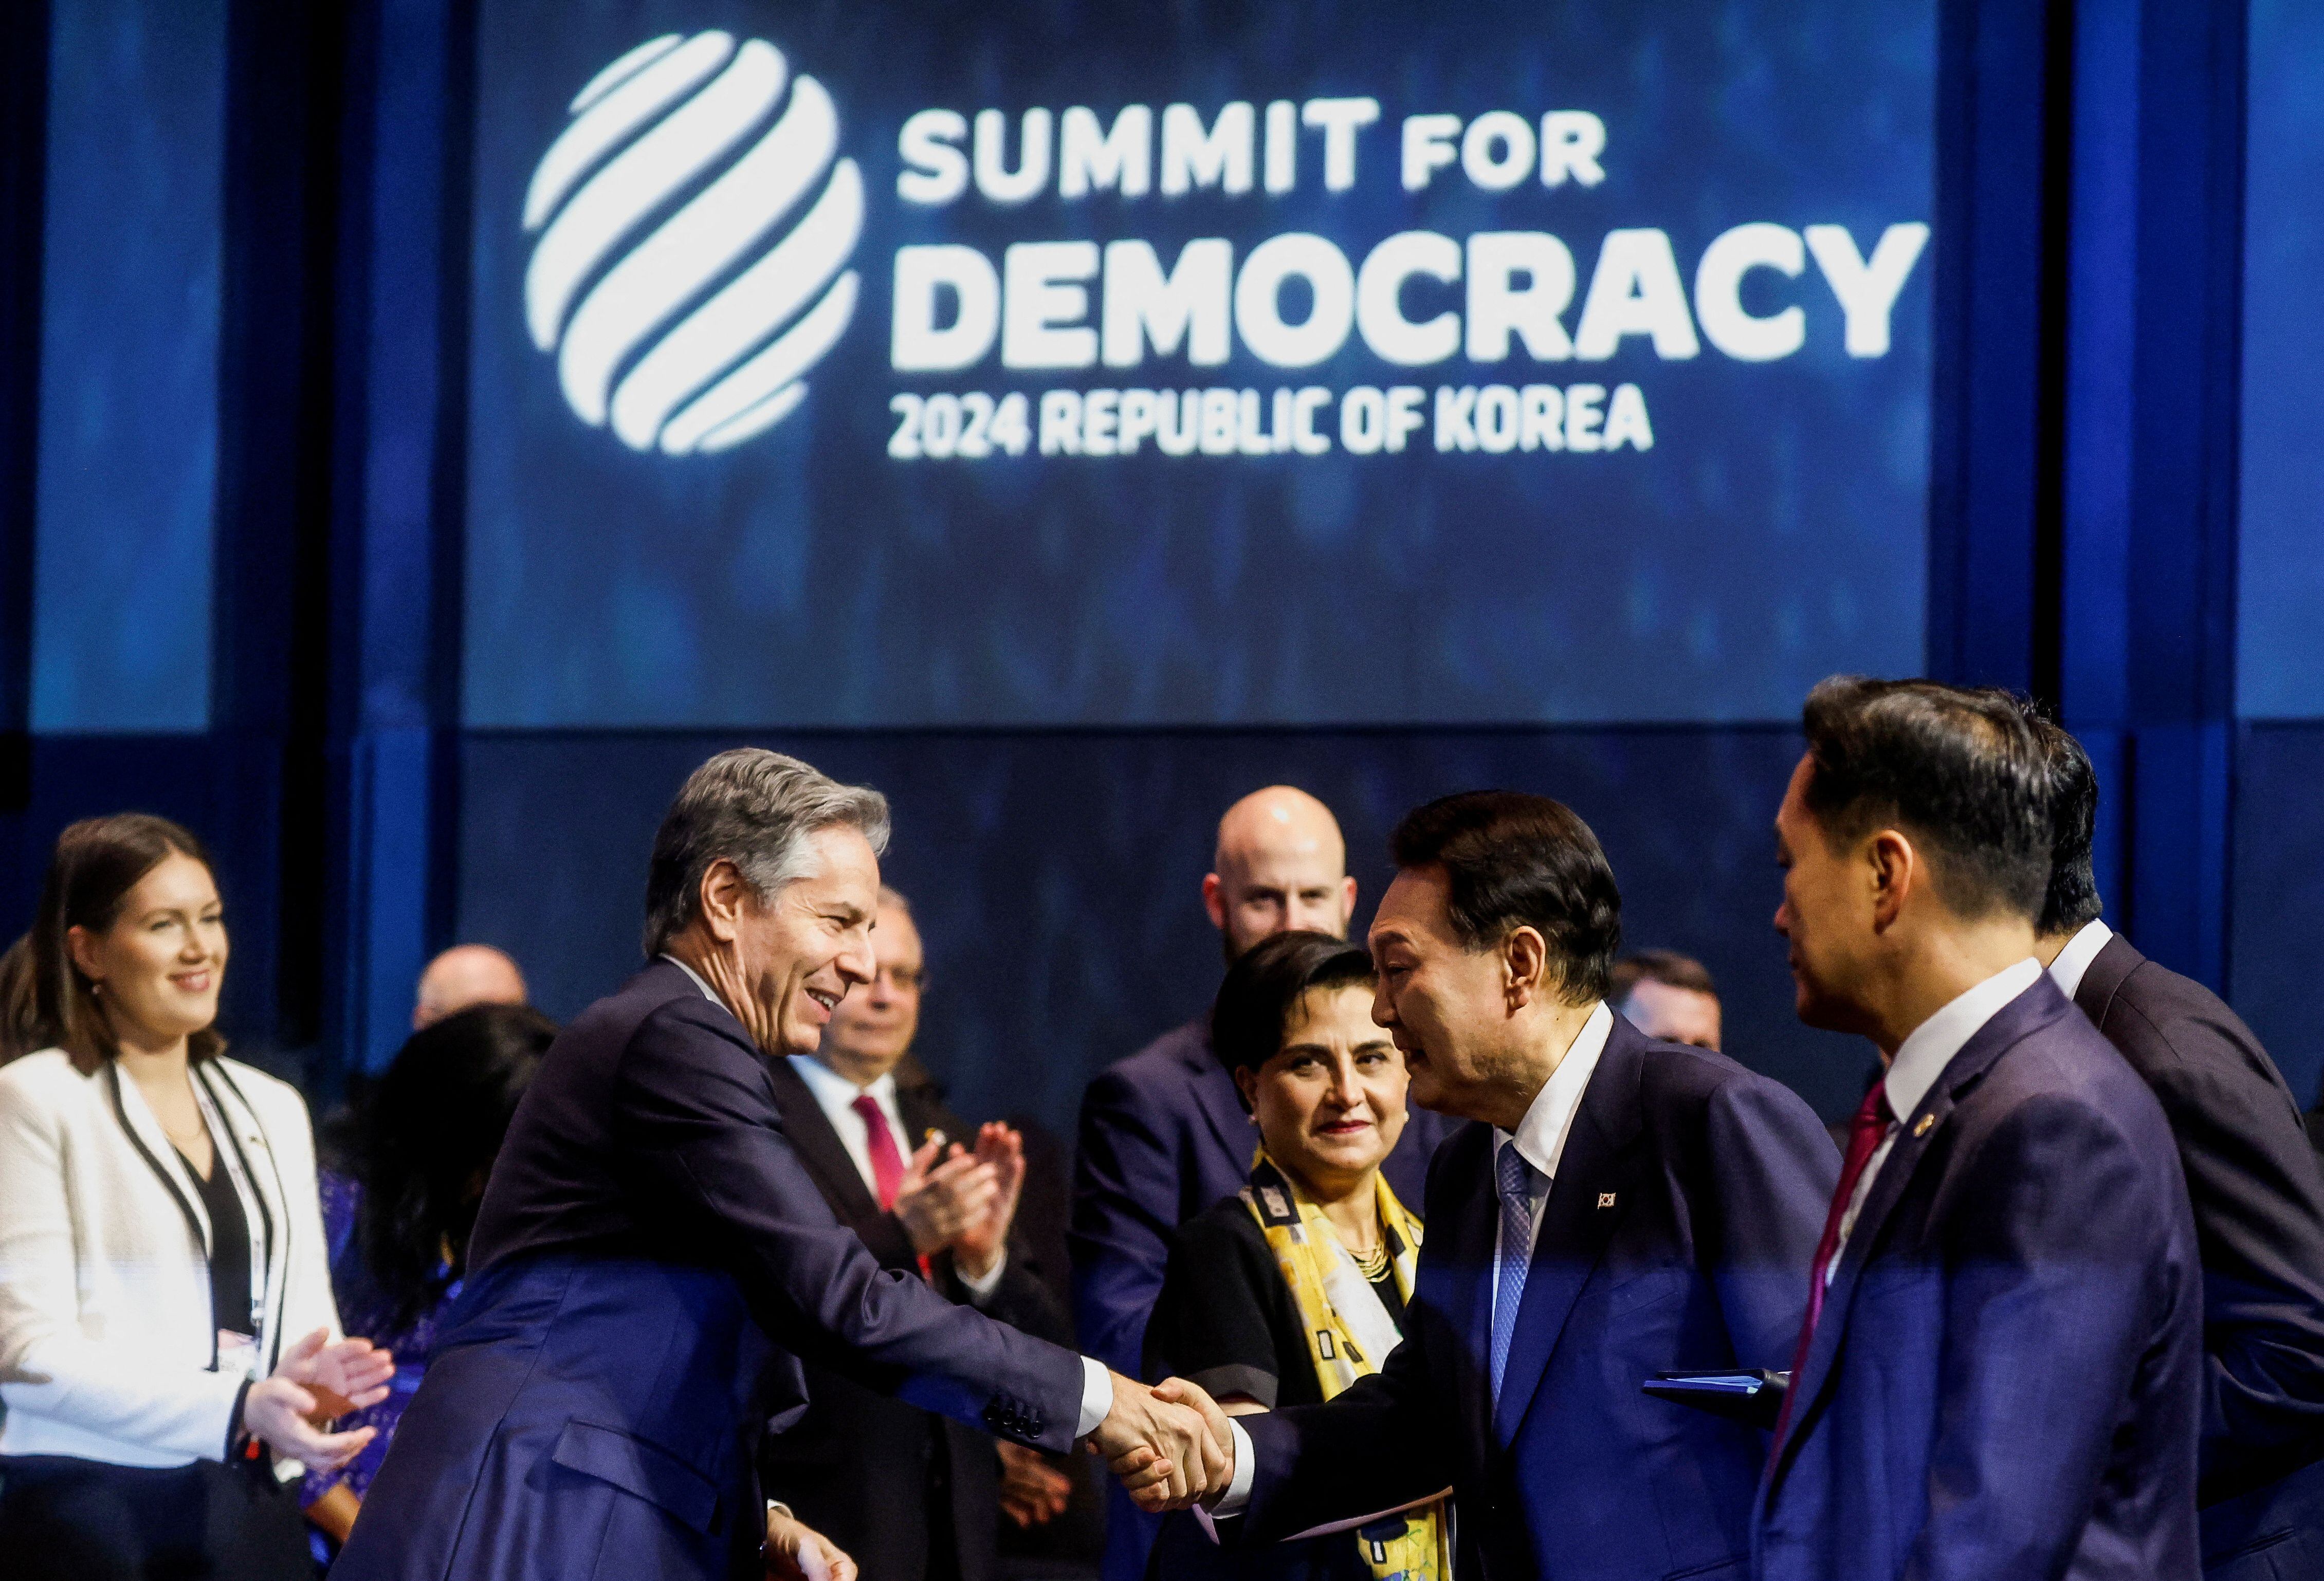 El secretario de Estado estadounidense Antony Blinken se reúnió con el presidente surcoreano Yoon Suk Yeol en la tercera Cumbre para la Democracia, en Seúl, Corea del Sur (REUTERS/Evelyn Hockstein)